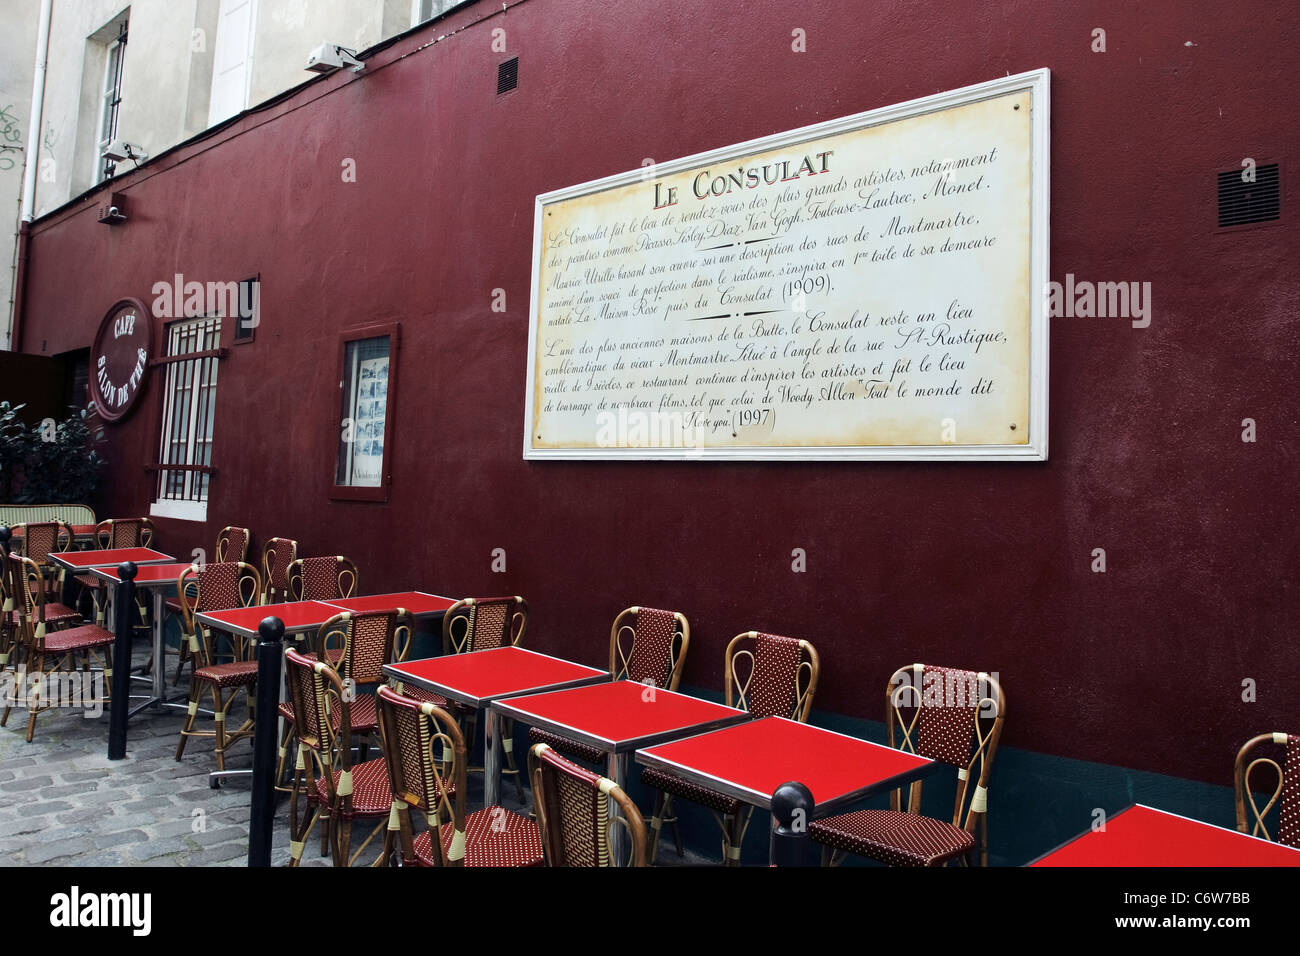 Une plaque sur un mur à Montmartre, Paris expliquant (en français) l'histoire et titres de gloire de Le Consulat café et restaurant Banque D'Images